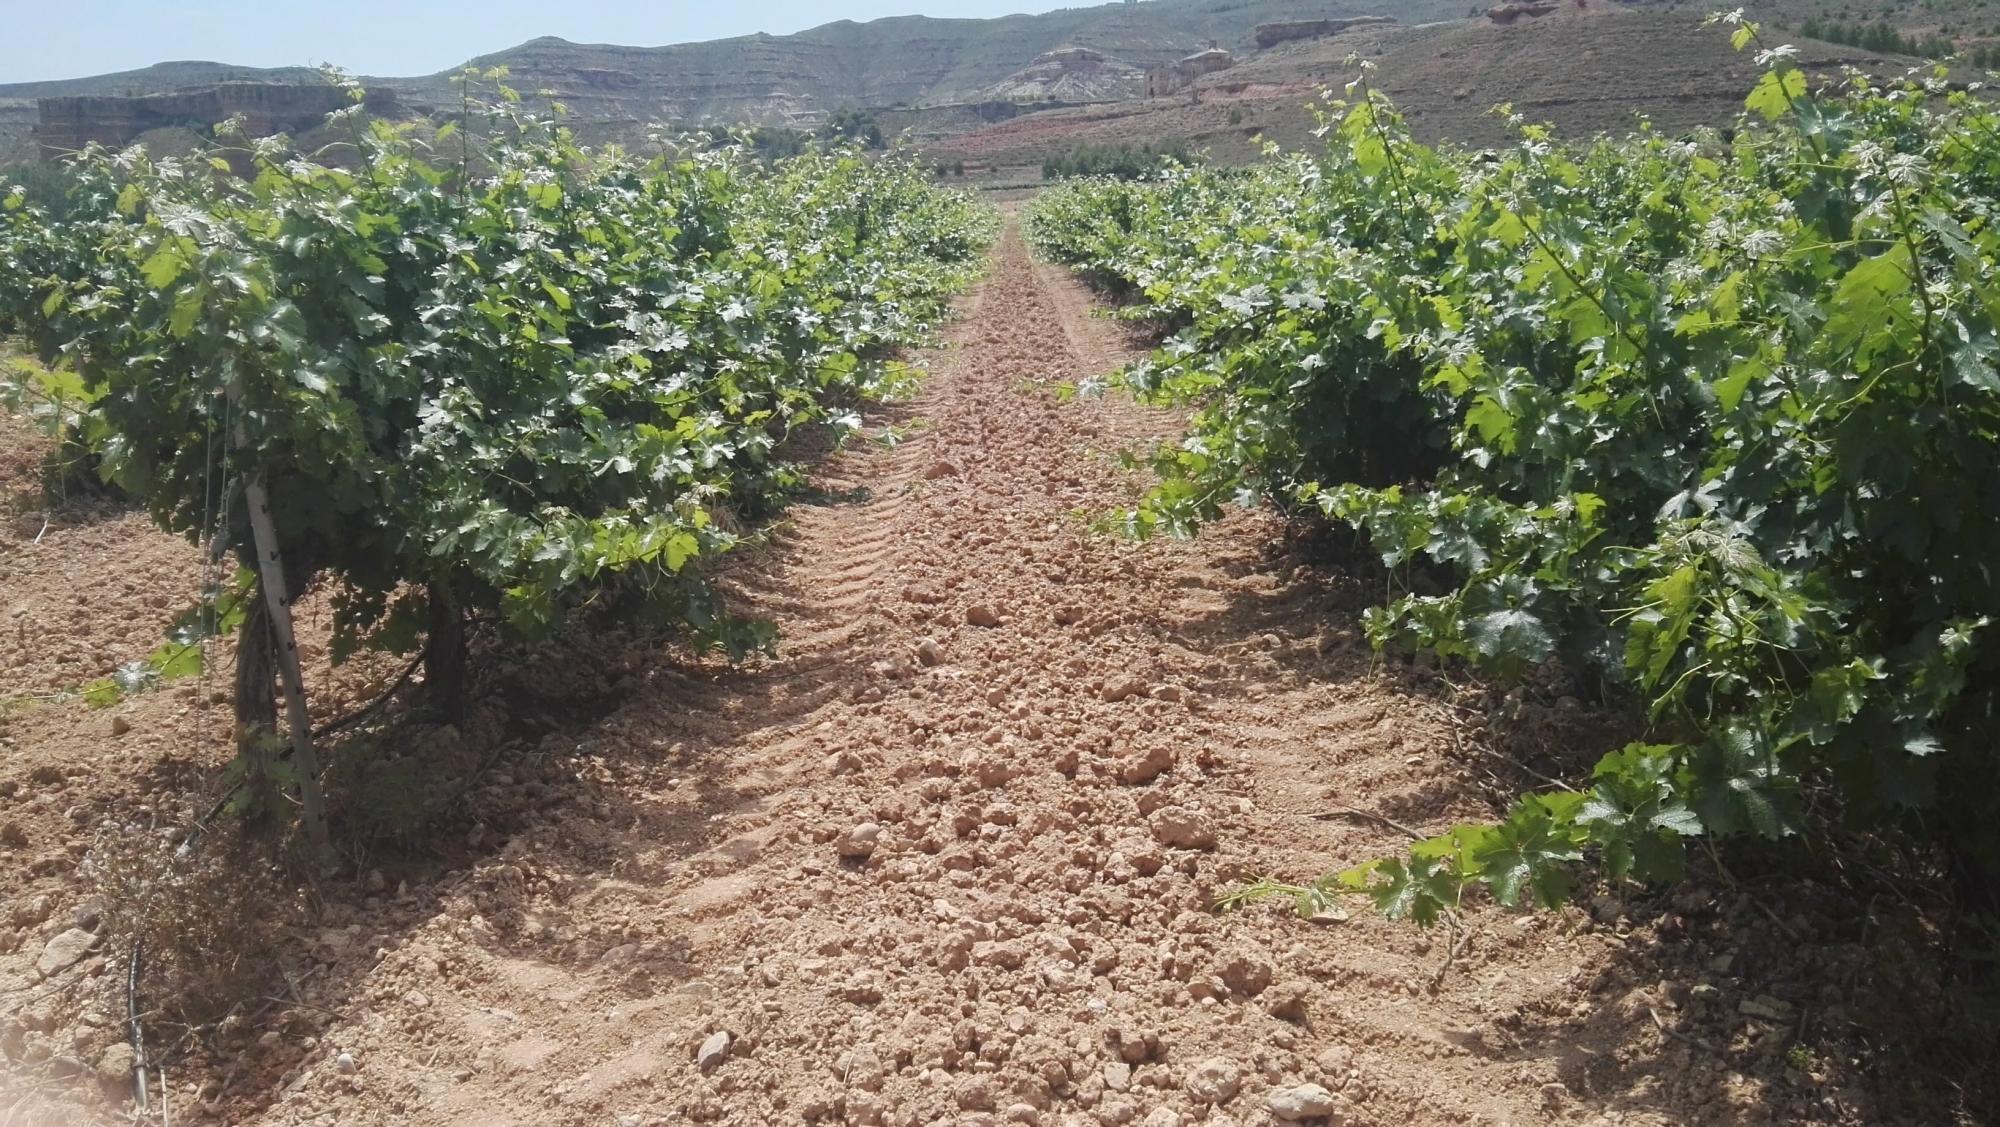 Toma de muestras para analítica de residuos fitosanitarios en cultivo de vid en El Frasno (Zaragoza).